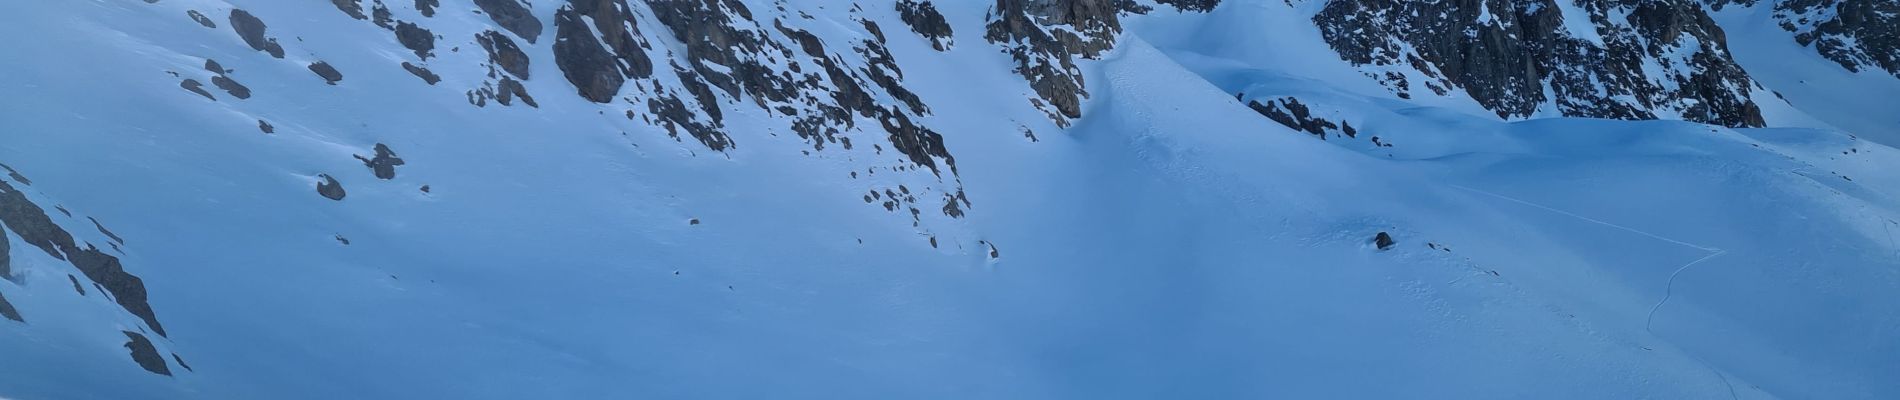 Randonnée Ski de randonnée Le Monêtier-les-Bains - pointe de Reou d arsine - Photo